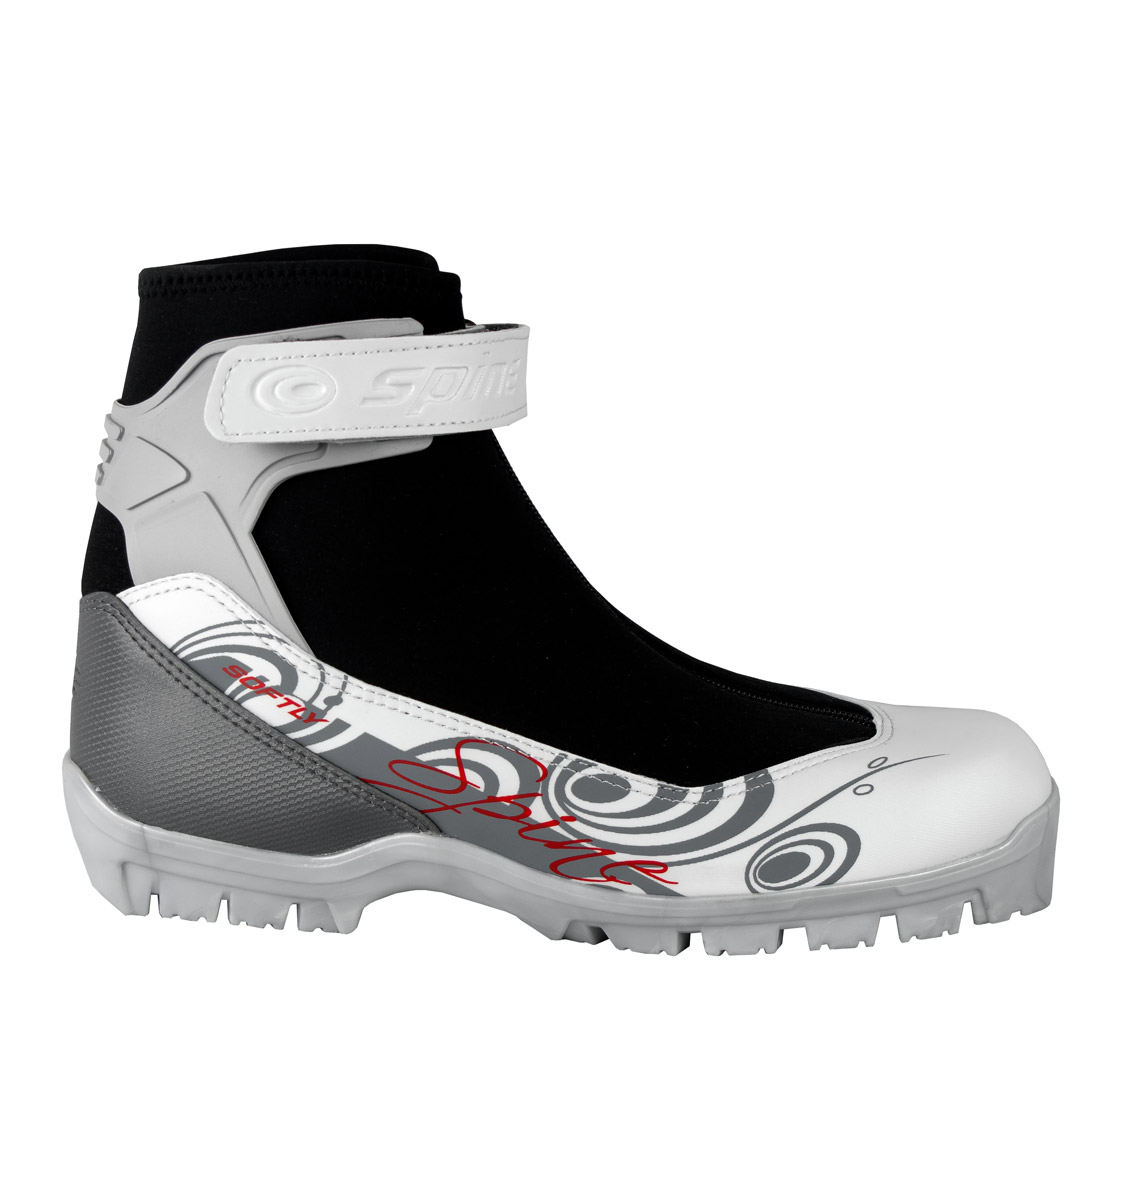 Лыжные ботинки SPINE X-RIDER 253/2 SNS ― купить в Москве. Цена, фото,описание, продажа,